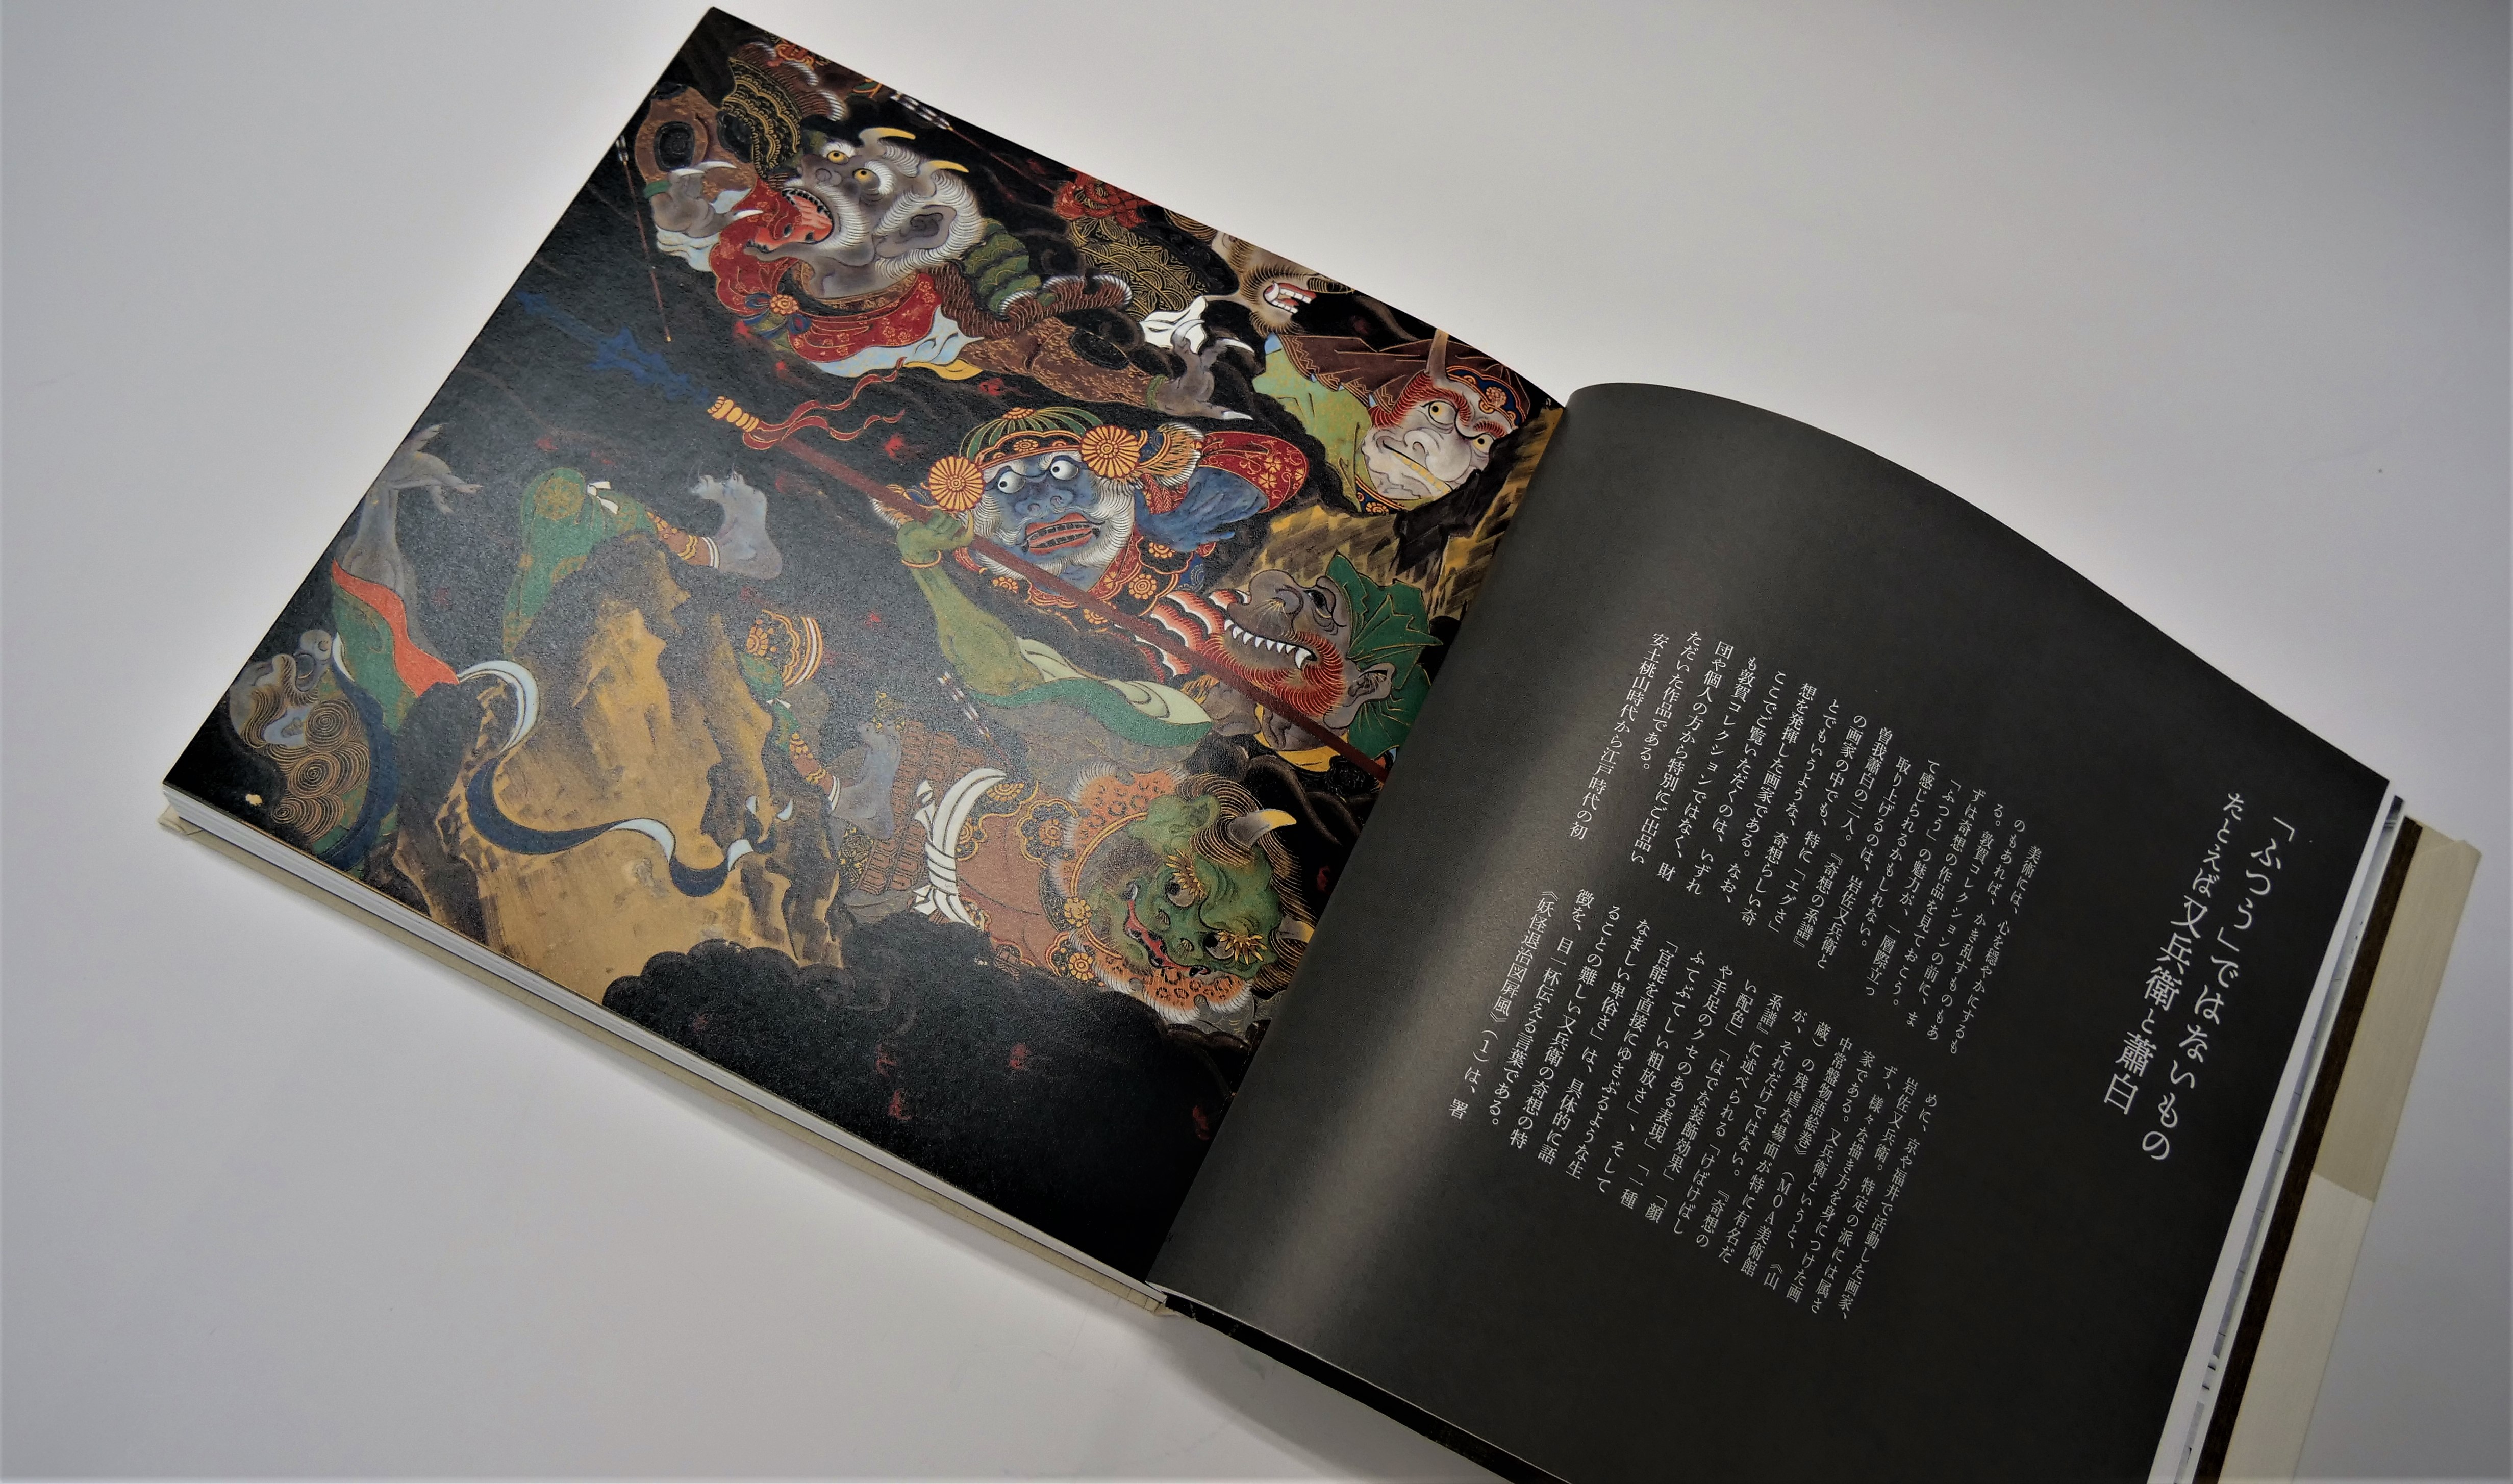 「ふつう」に美しい日本の絵画に出会える展覧会図録。絵の具の 